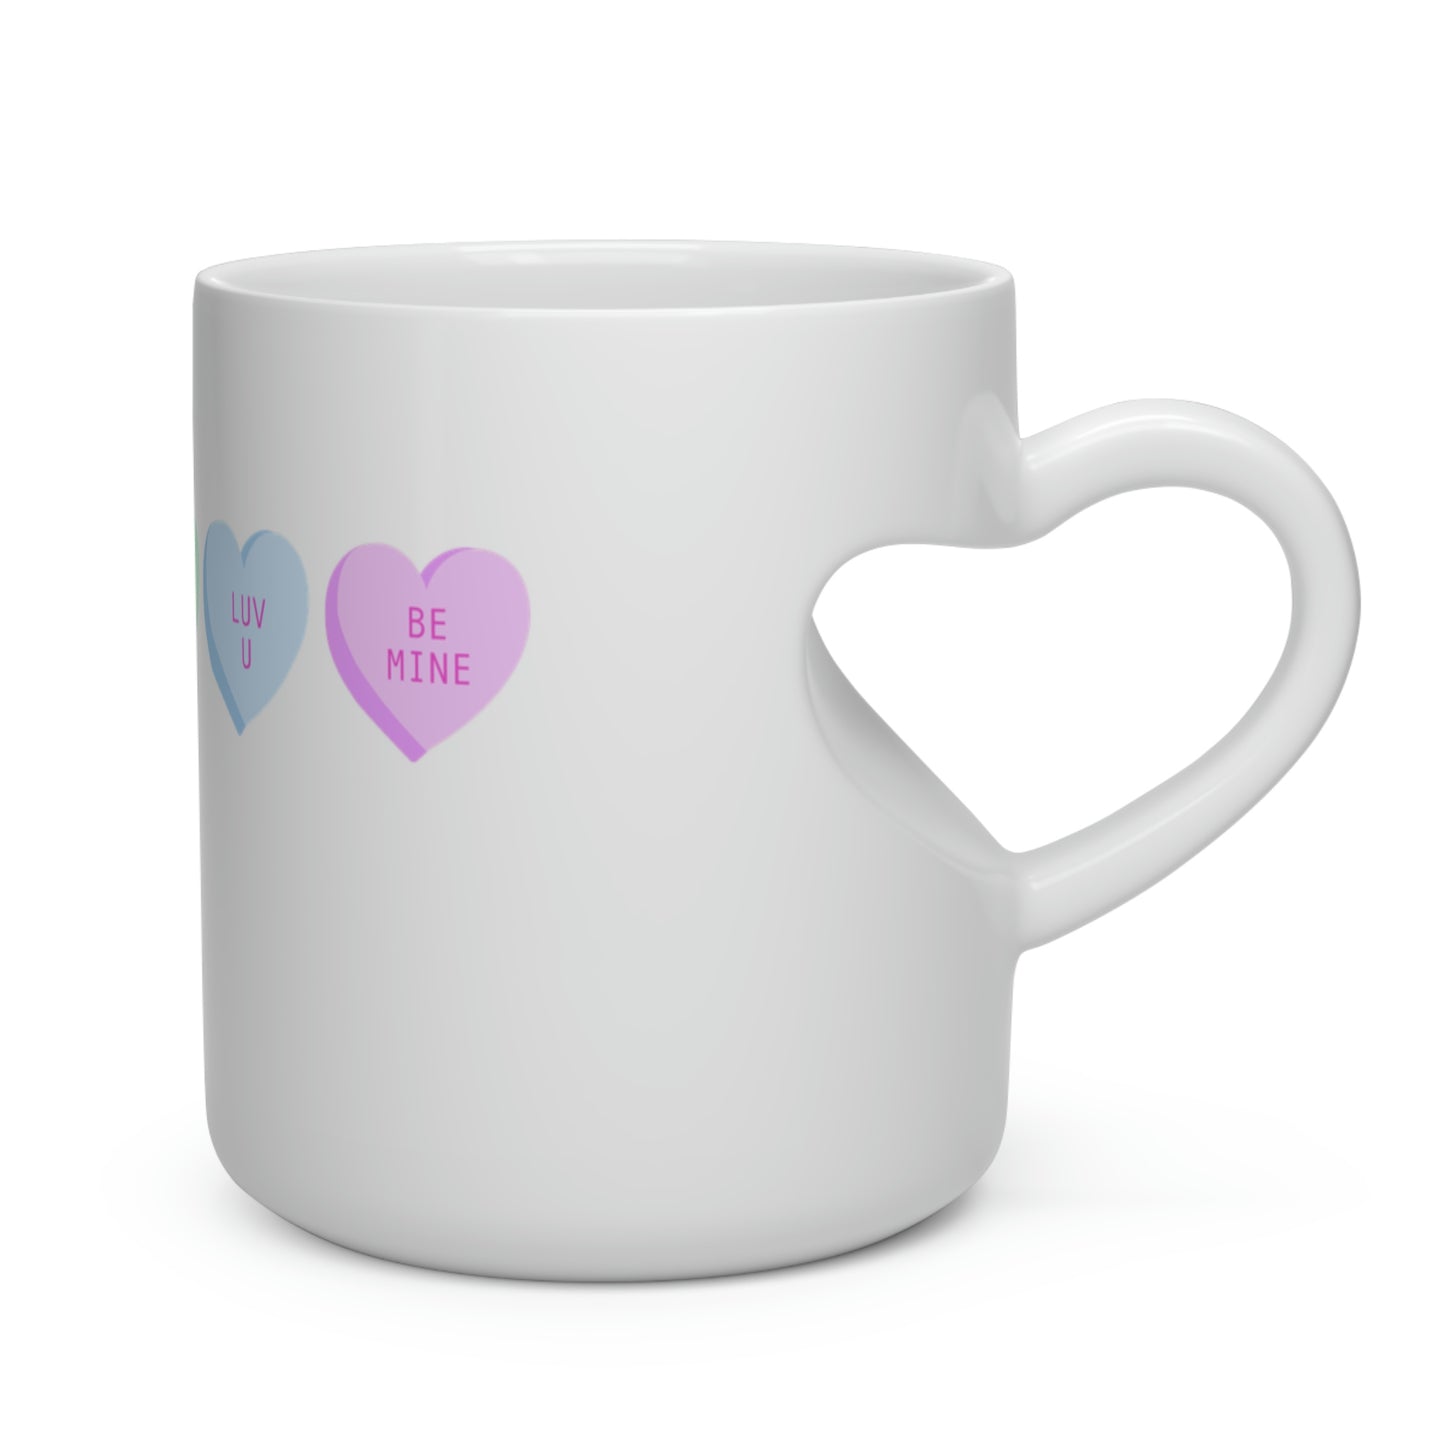 Heart-Shaped Candy Mug